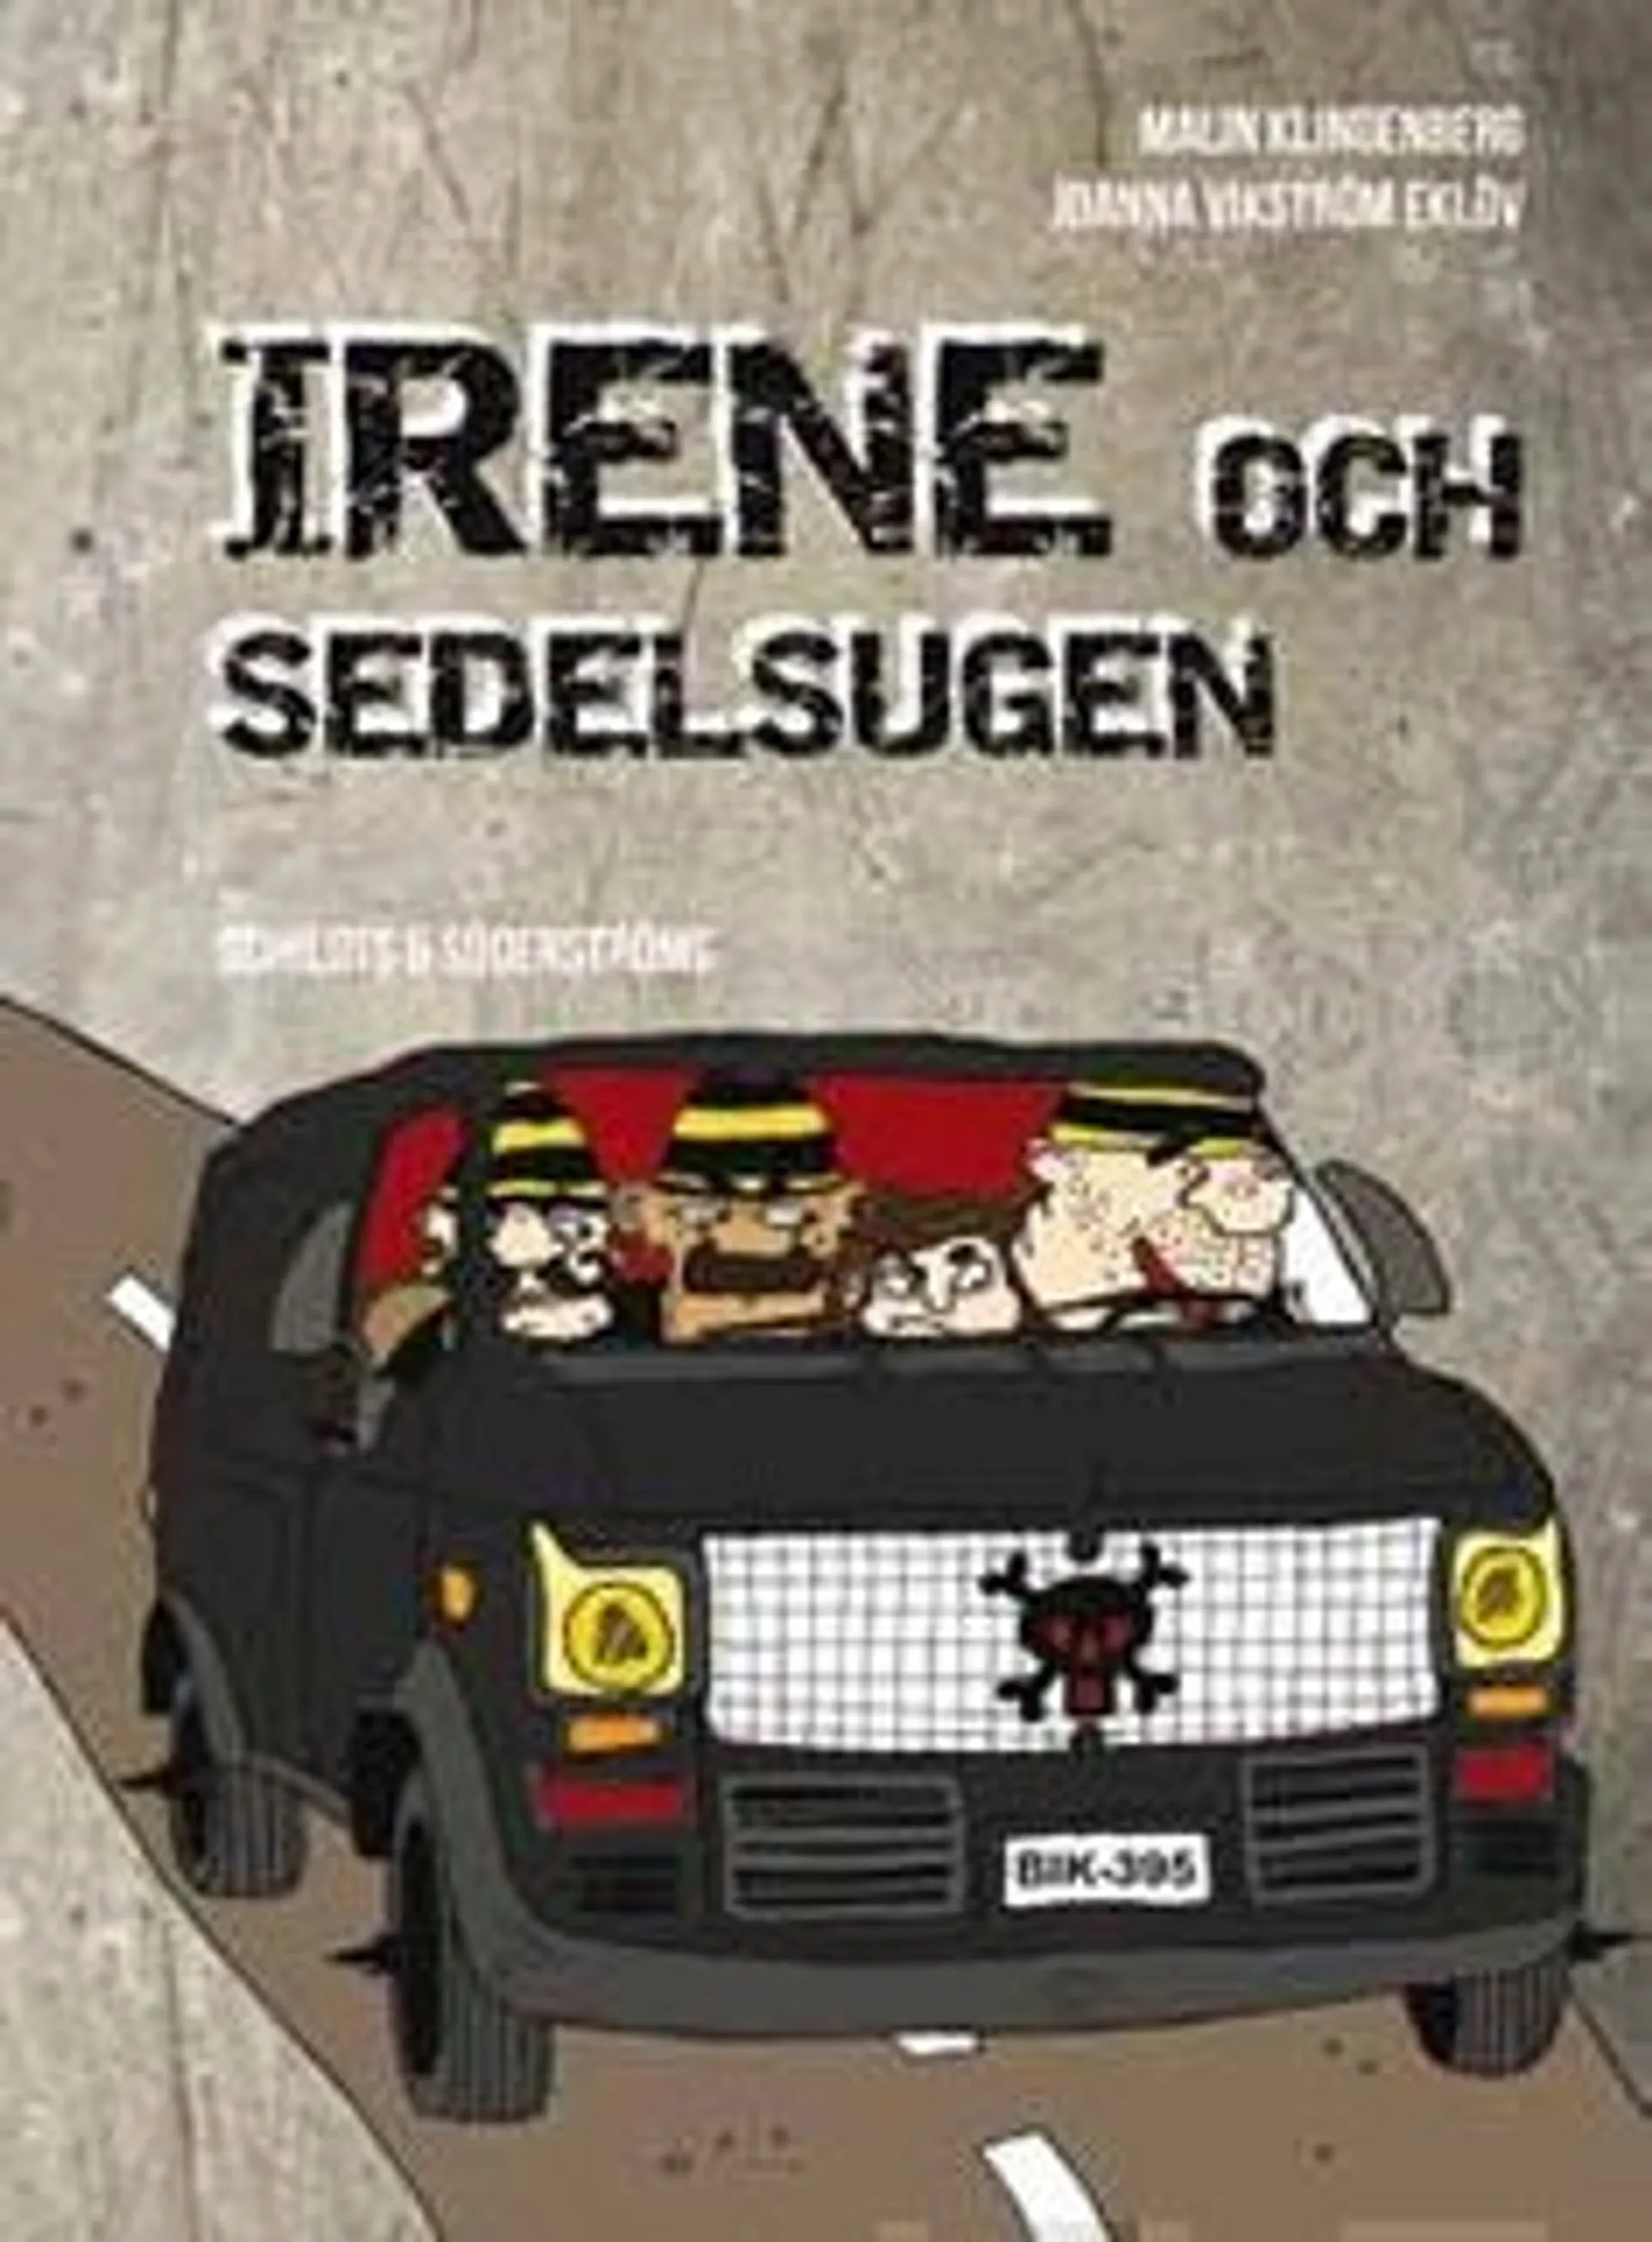 Klingenberg, Irene och sedelsugen